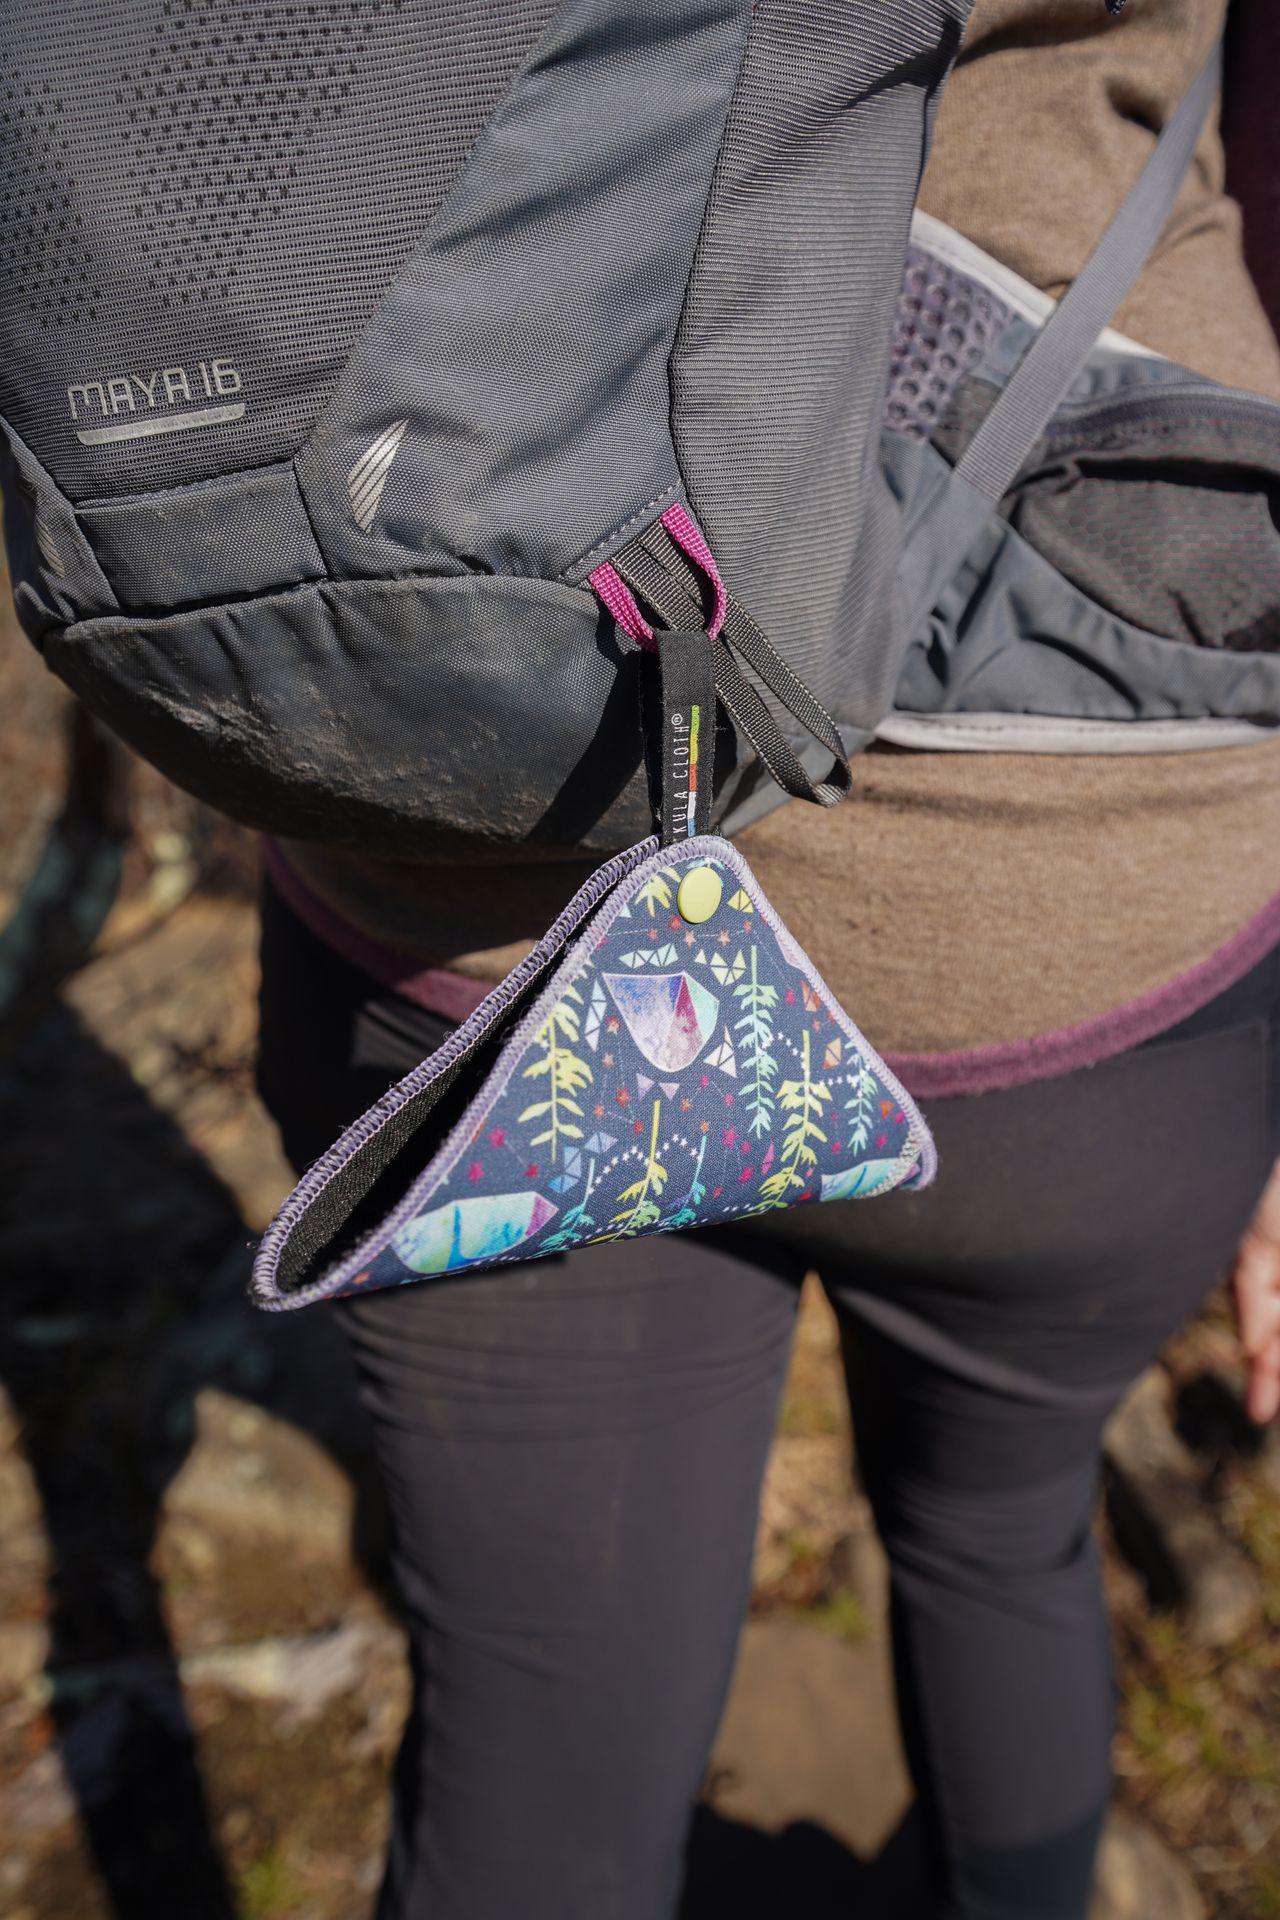 A Kula Cloth straps onto the bottom of a backpack.